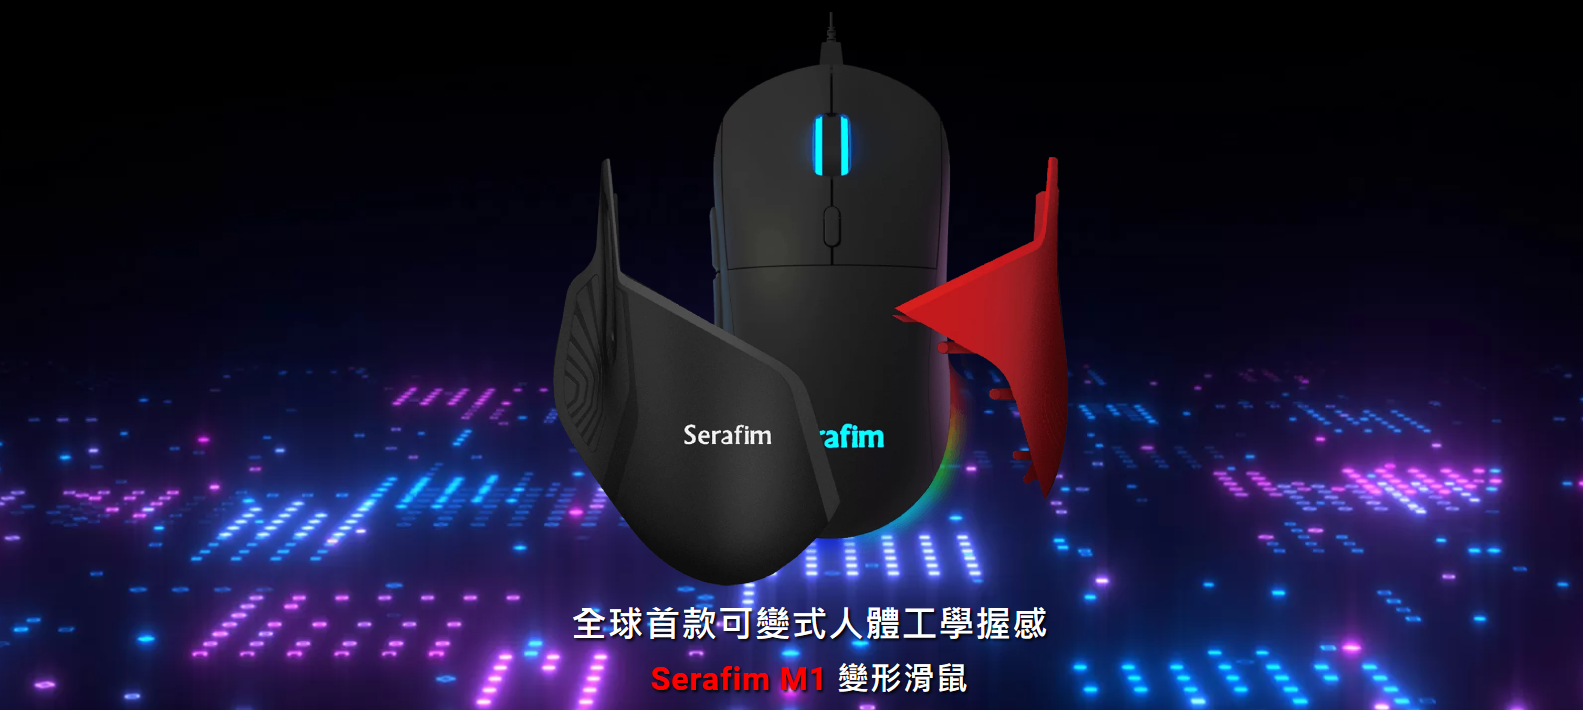 Serafim M1 變形滑鼠開放預購 強調能透過快拆外殼切換成電競 / 商務滑鼠